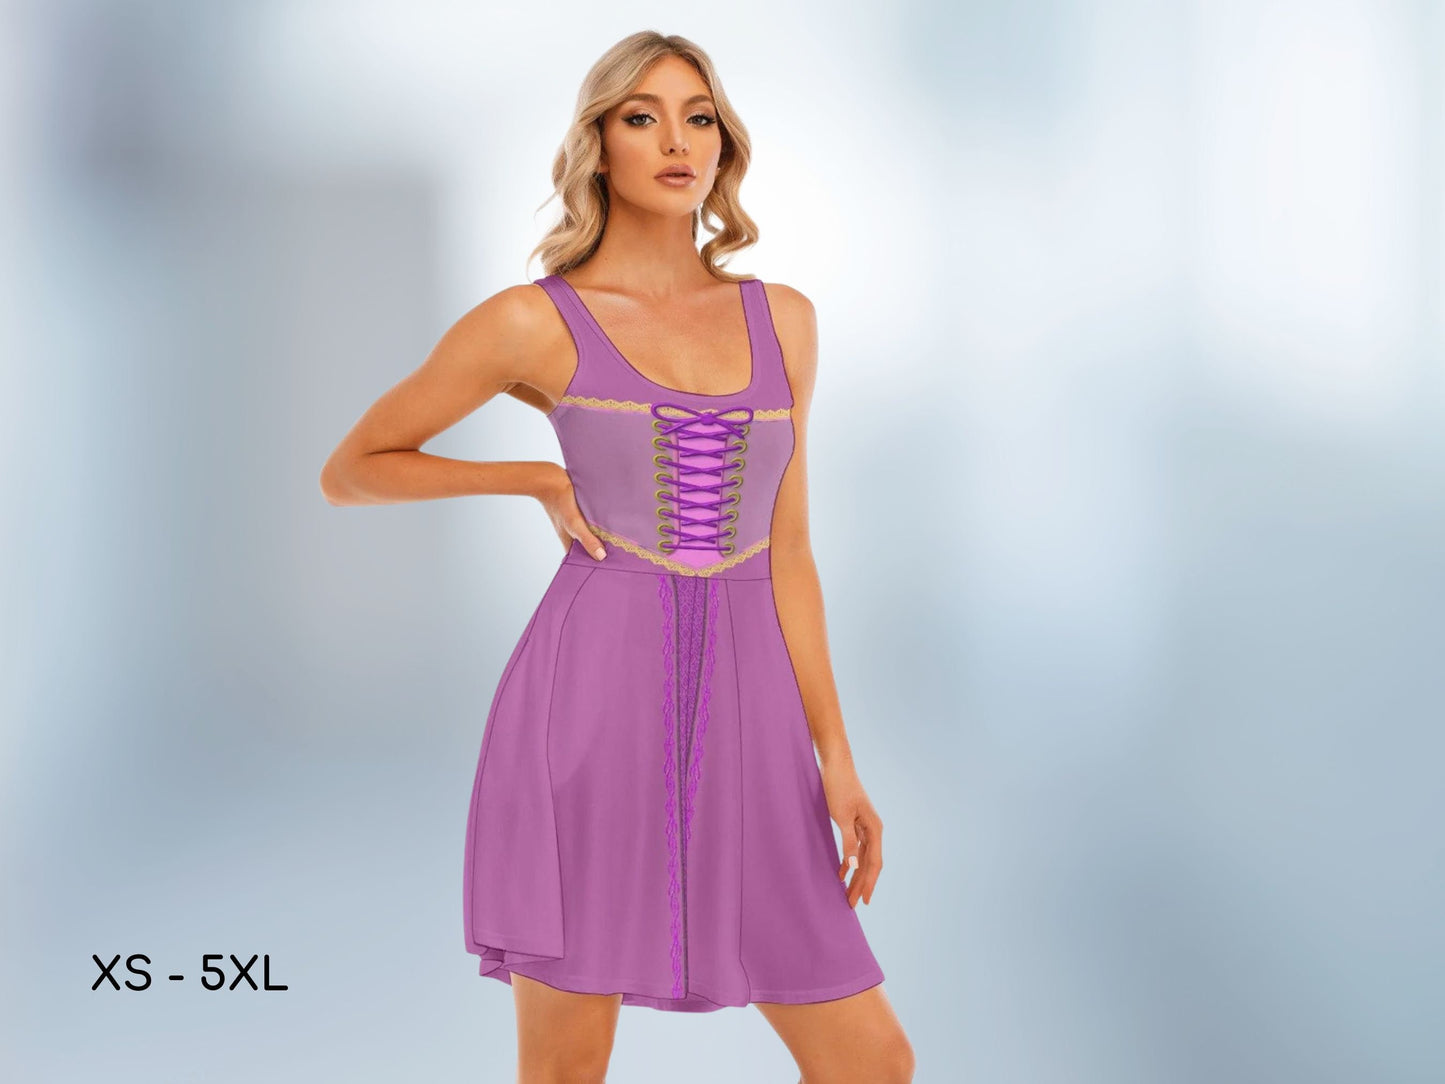 Rapunzel Women's Tank Vest Dress, Sexy Dress, Adult Halloween Costume, Halloween Dress, Cosplay Dress, Gift for Her, Bound, Dapper Day